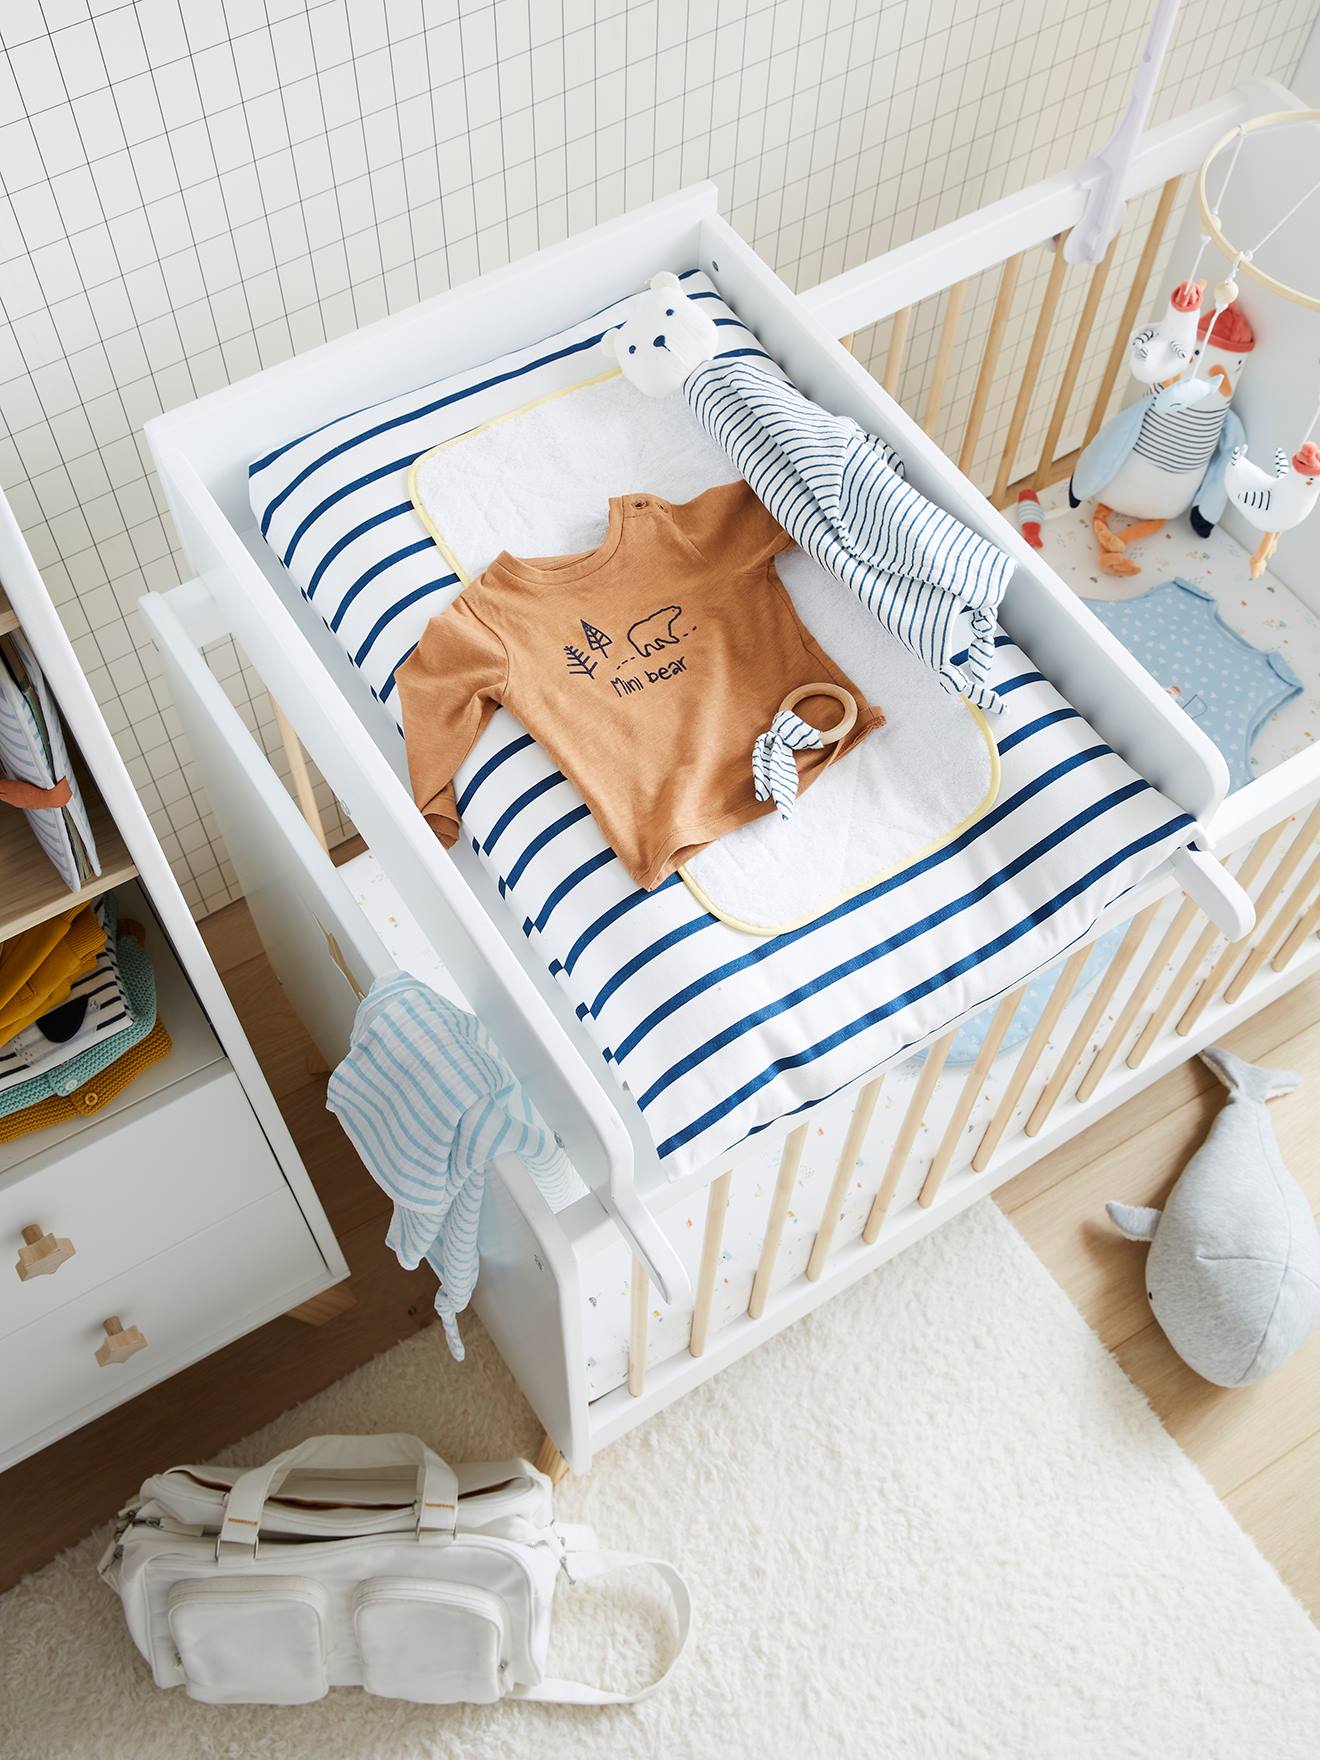 Plan à langer universel 52 cm pour lits bébé April - blanc, Chambre et  rangement